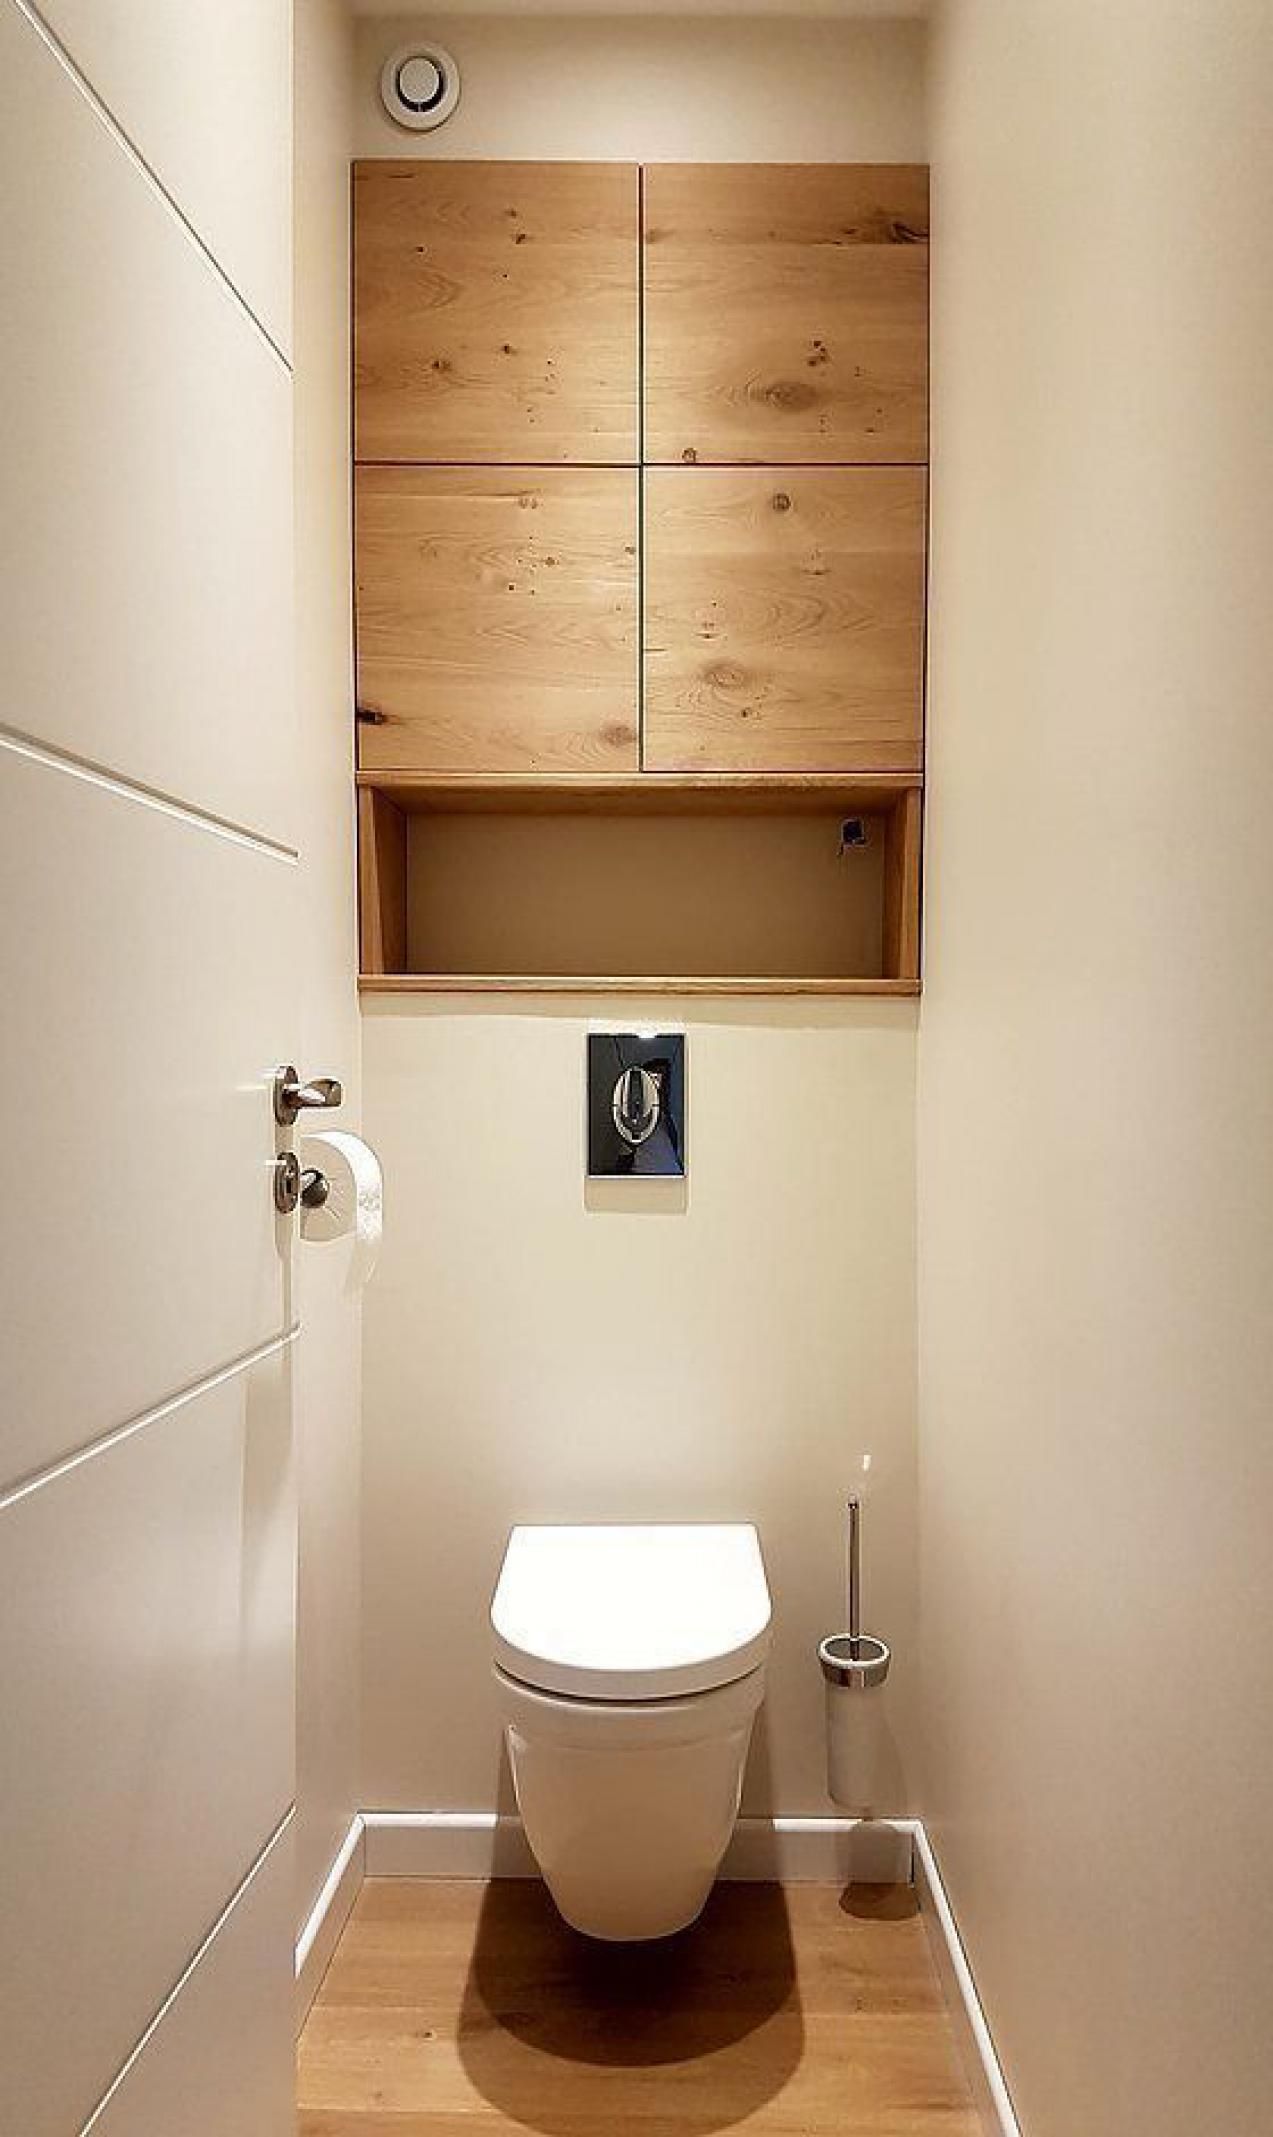  узкого туалета:  маленького туалета, где только унитаз .